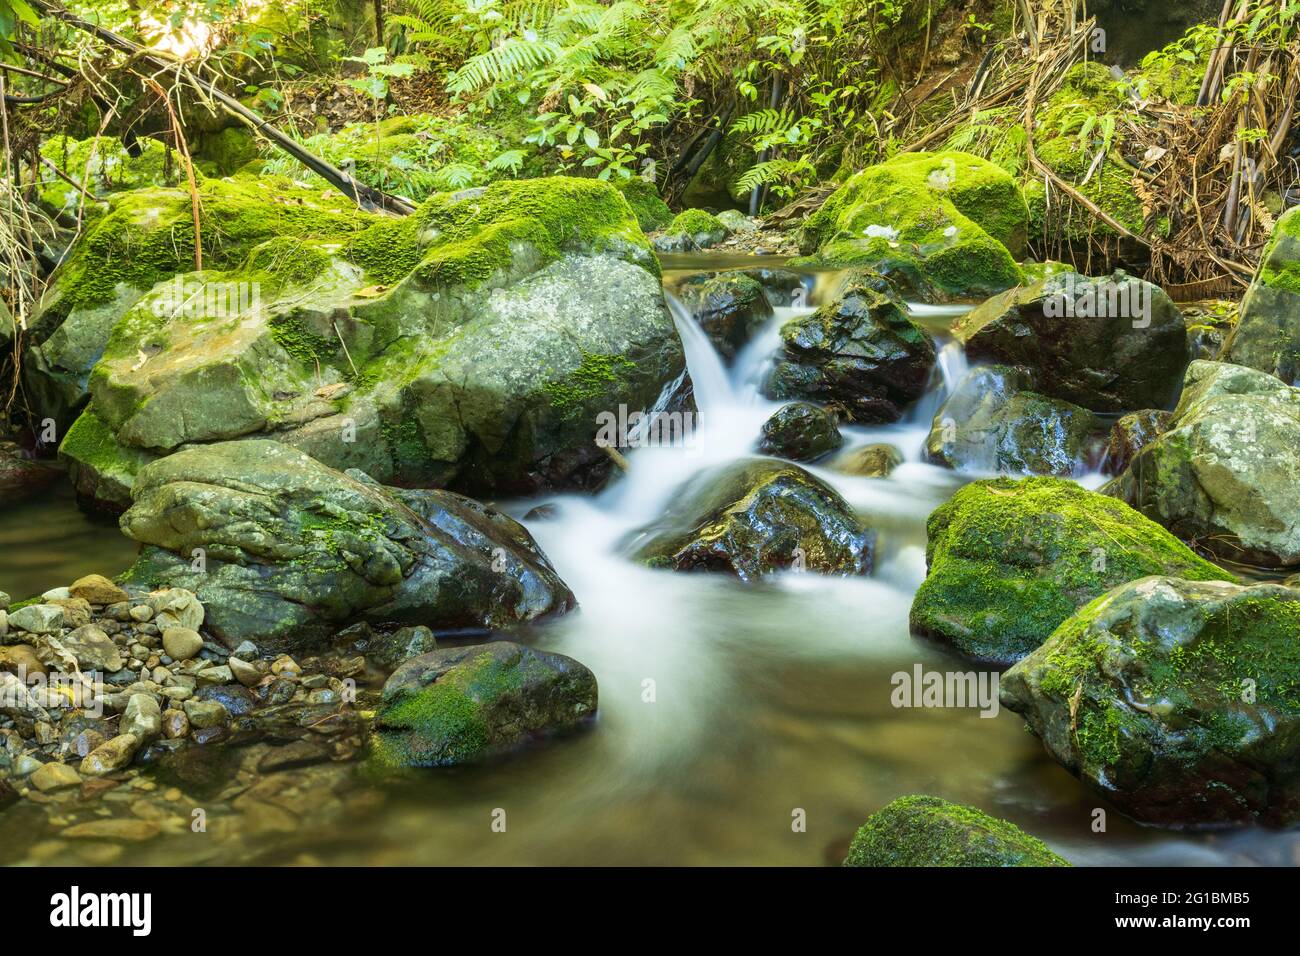 La Nuova Zelanda ha un sacco di macchia naturale con vie d'acqua bautiful che scorrono attraverso di loro come questo. Foto Stock